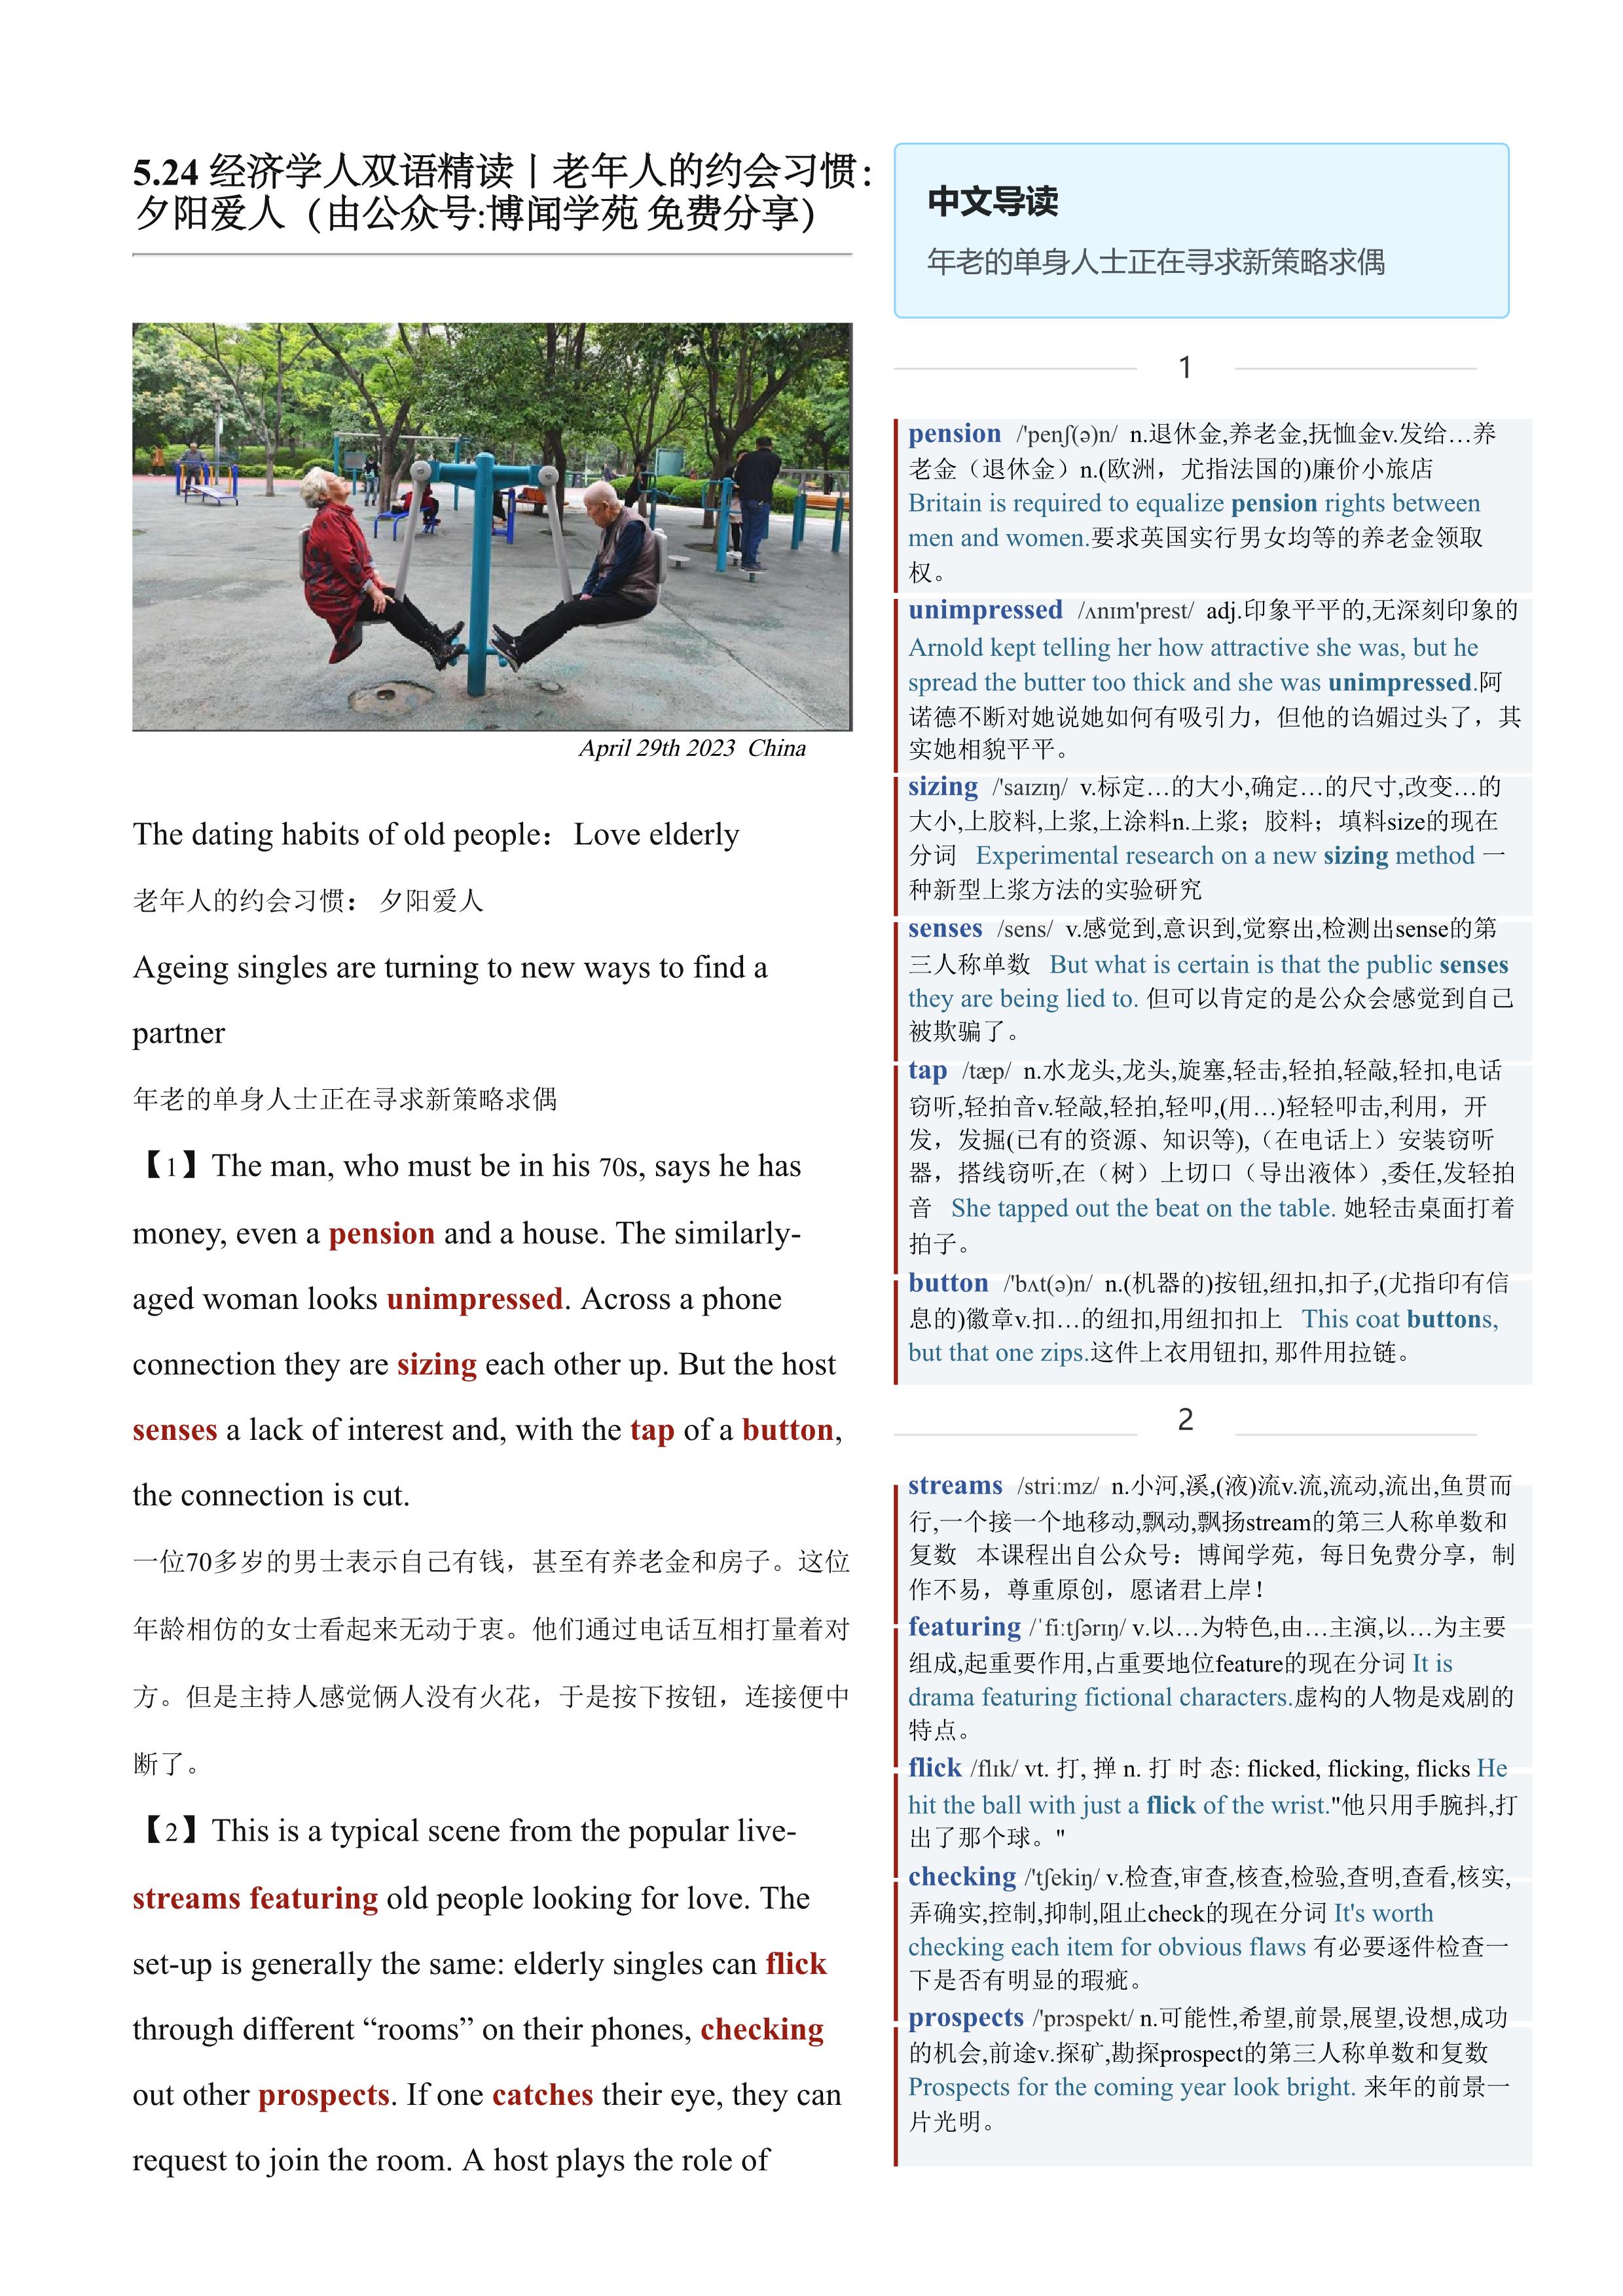 2023.05.24 经济学人双语精读丨老年人的约会习惯：夕阳爱人 (.PDF/DOC/MP3)